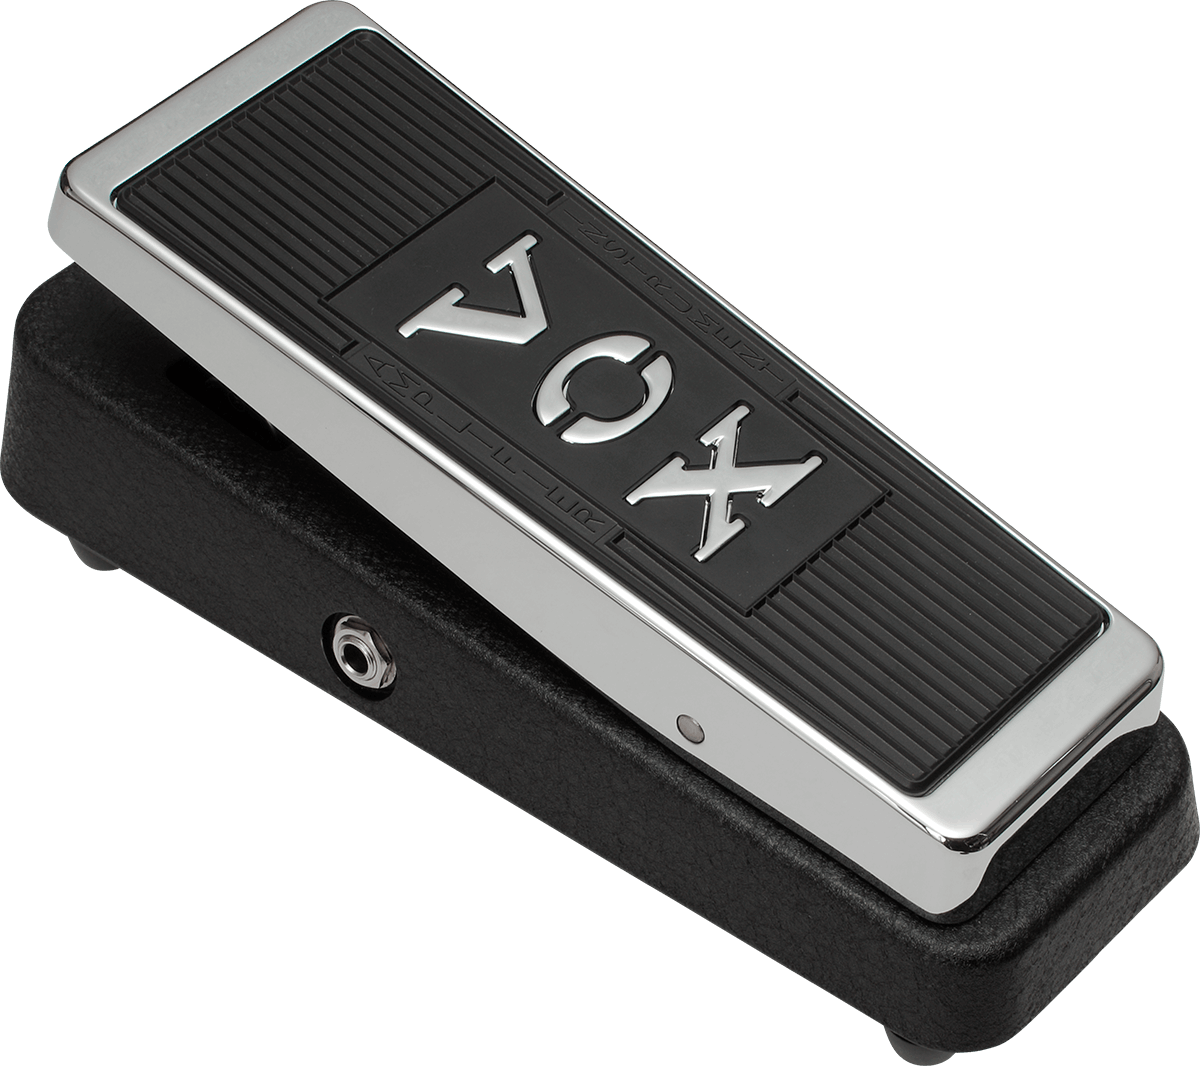 Vox Vrm-1 Real Mccoy Wah Pedal - Wah & filter effect pedal - Variation 3